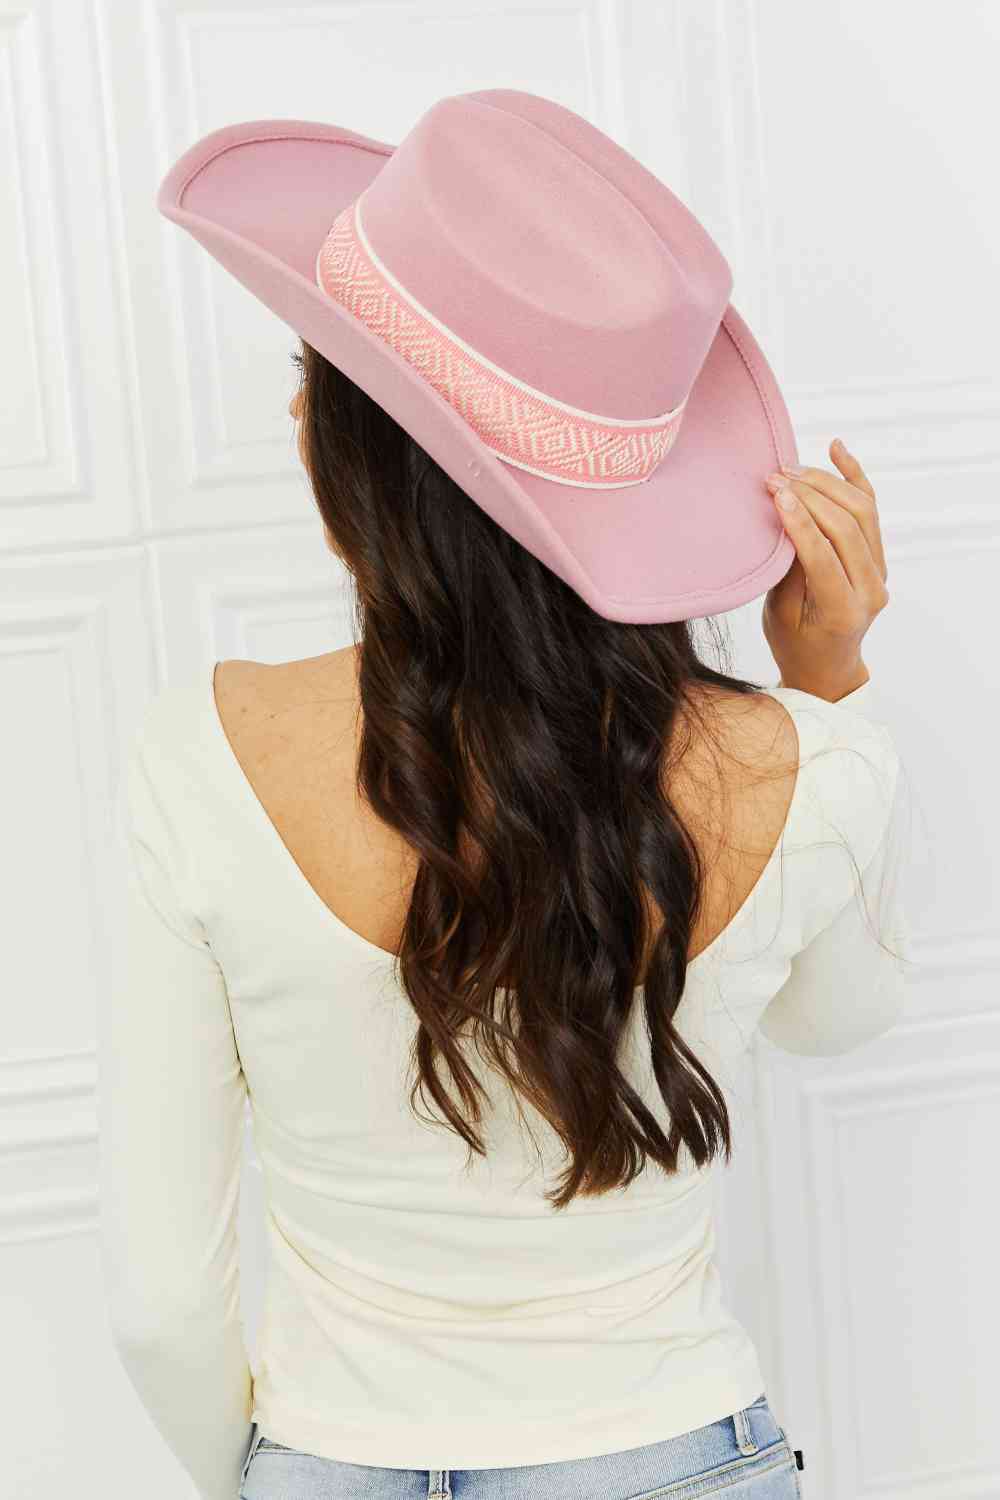 Pink Cowgirl Hat - Adjustable Felt Cowboy Hat for France